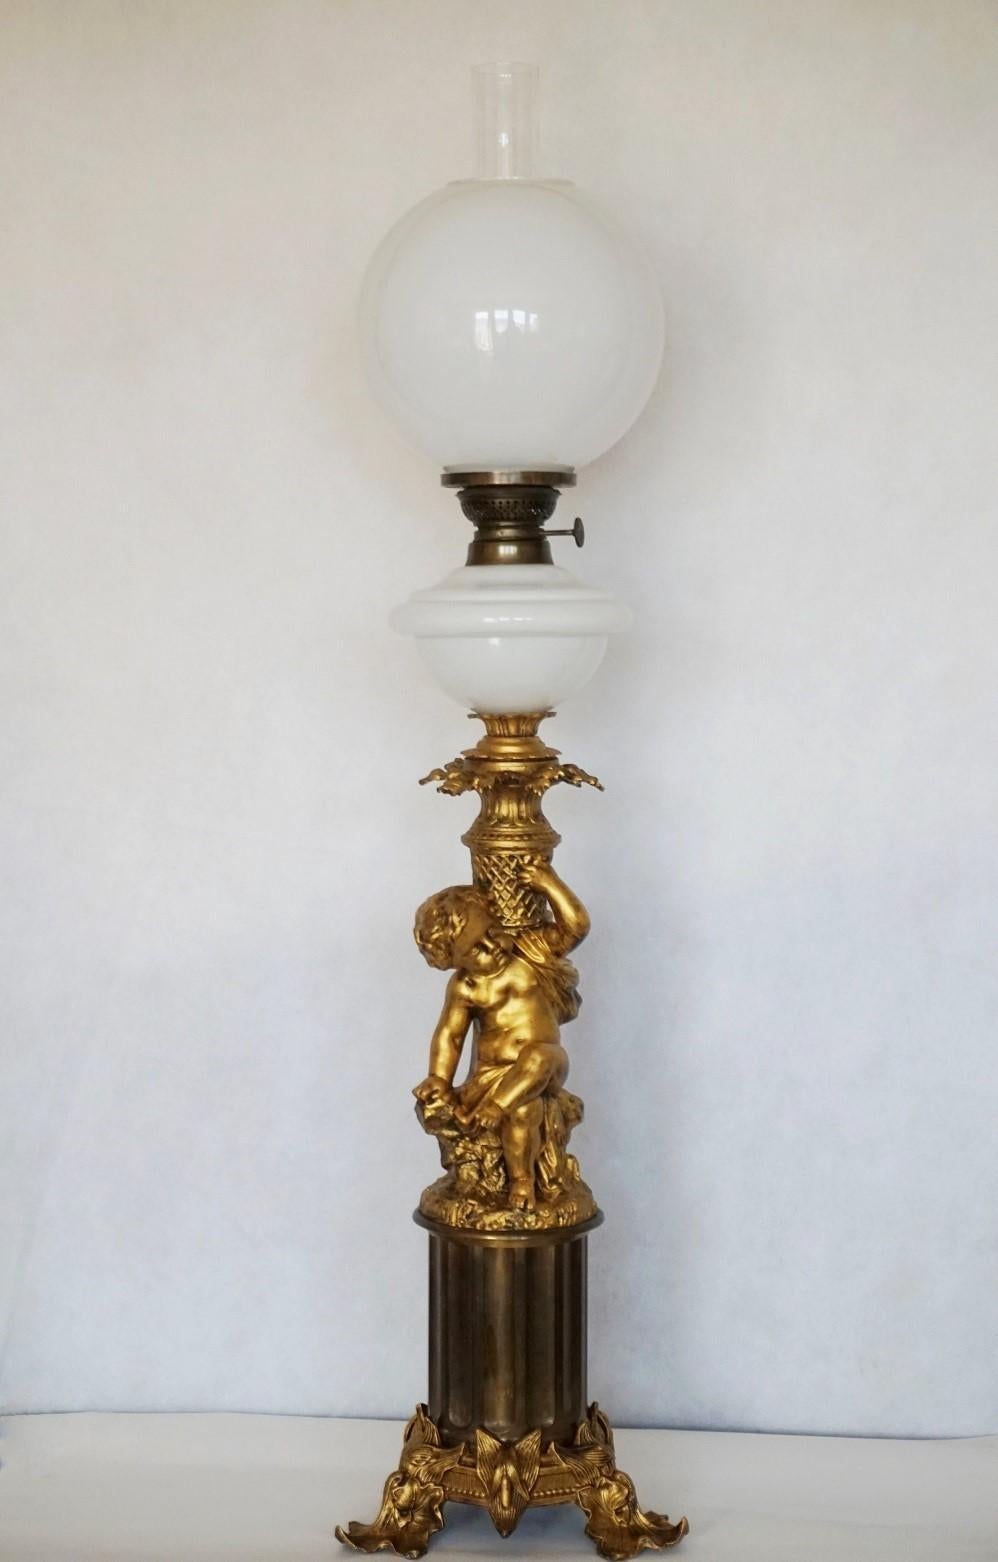 Superbe grande lampe à huile de bibliothèque de style victorien en bronze doré convertie à l'électricité, France 1870-1879. Bénitier et abat-jour originaux en verre soufflé à la main avec cheminée en verre clair. Magnifique chérubin assis sur un